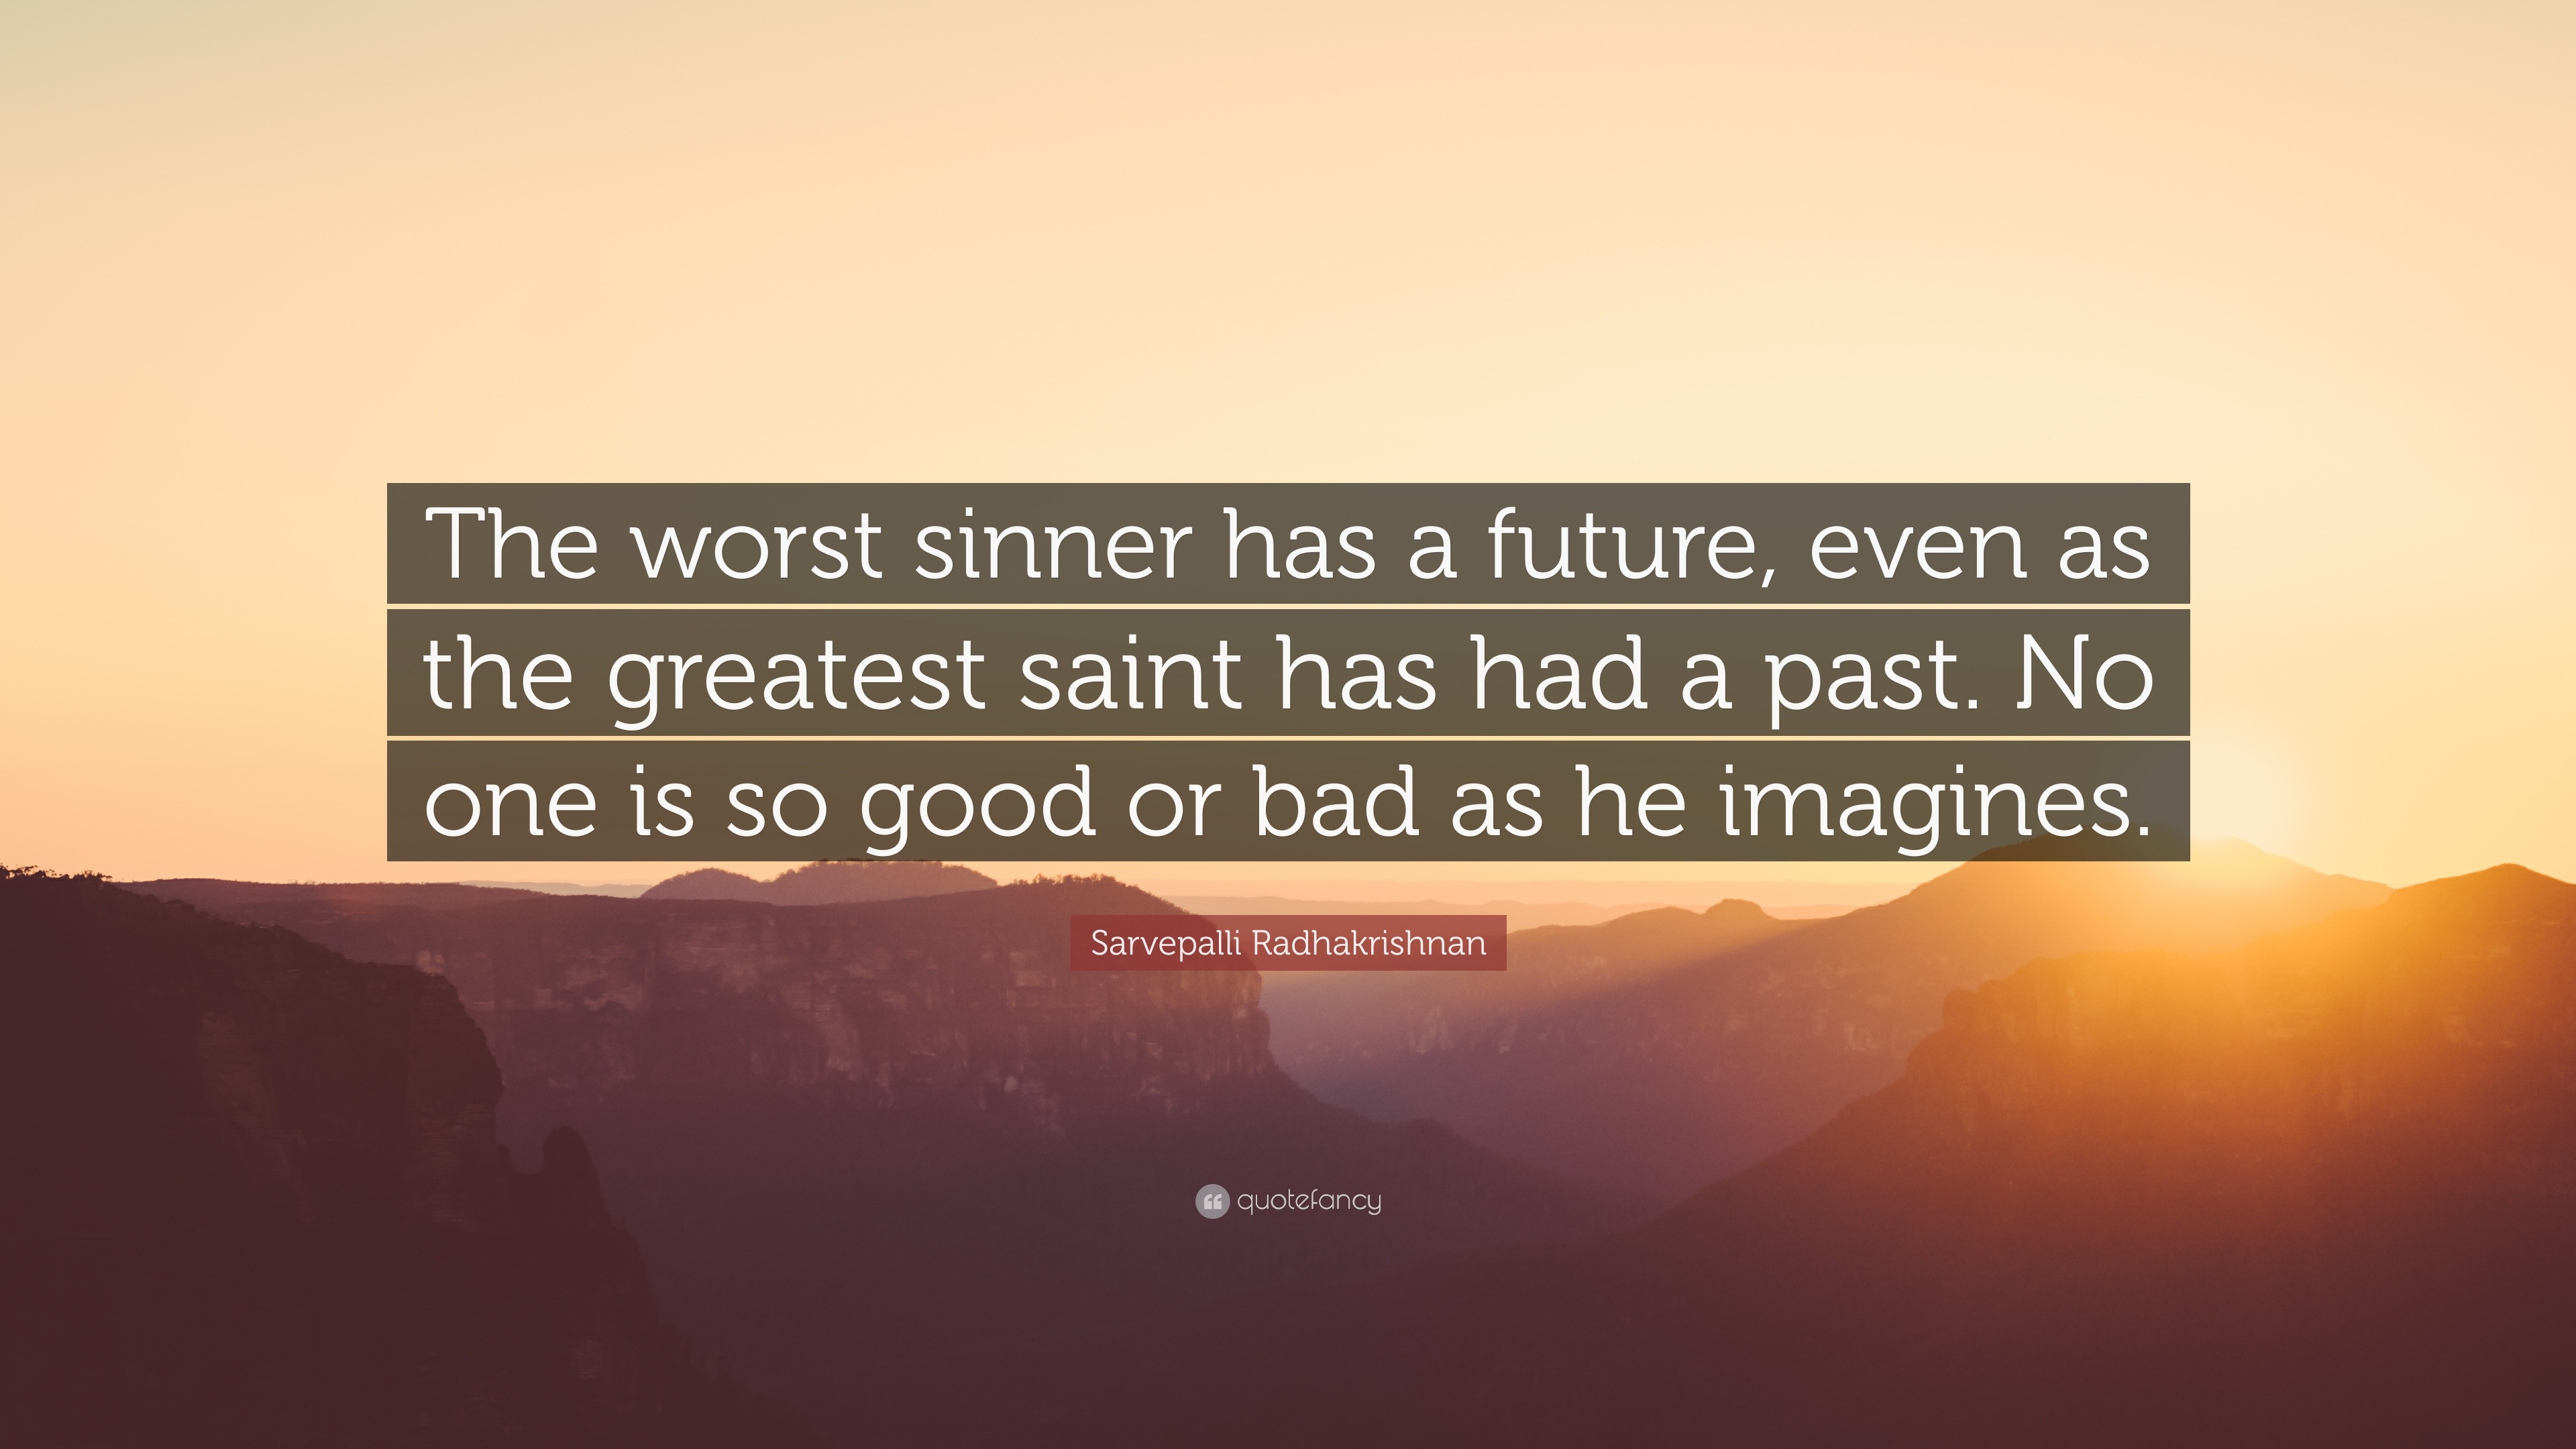 The worst sinner